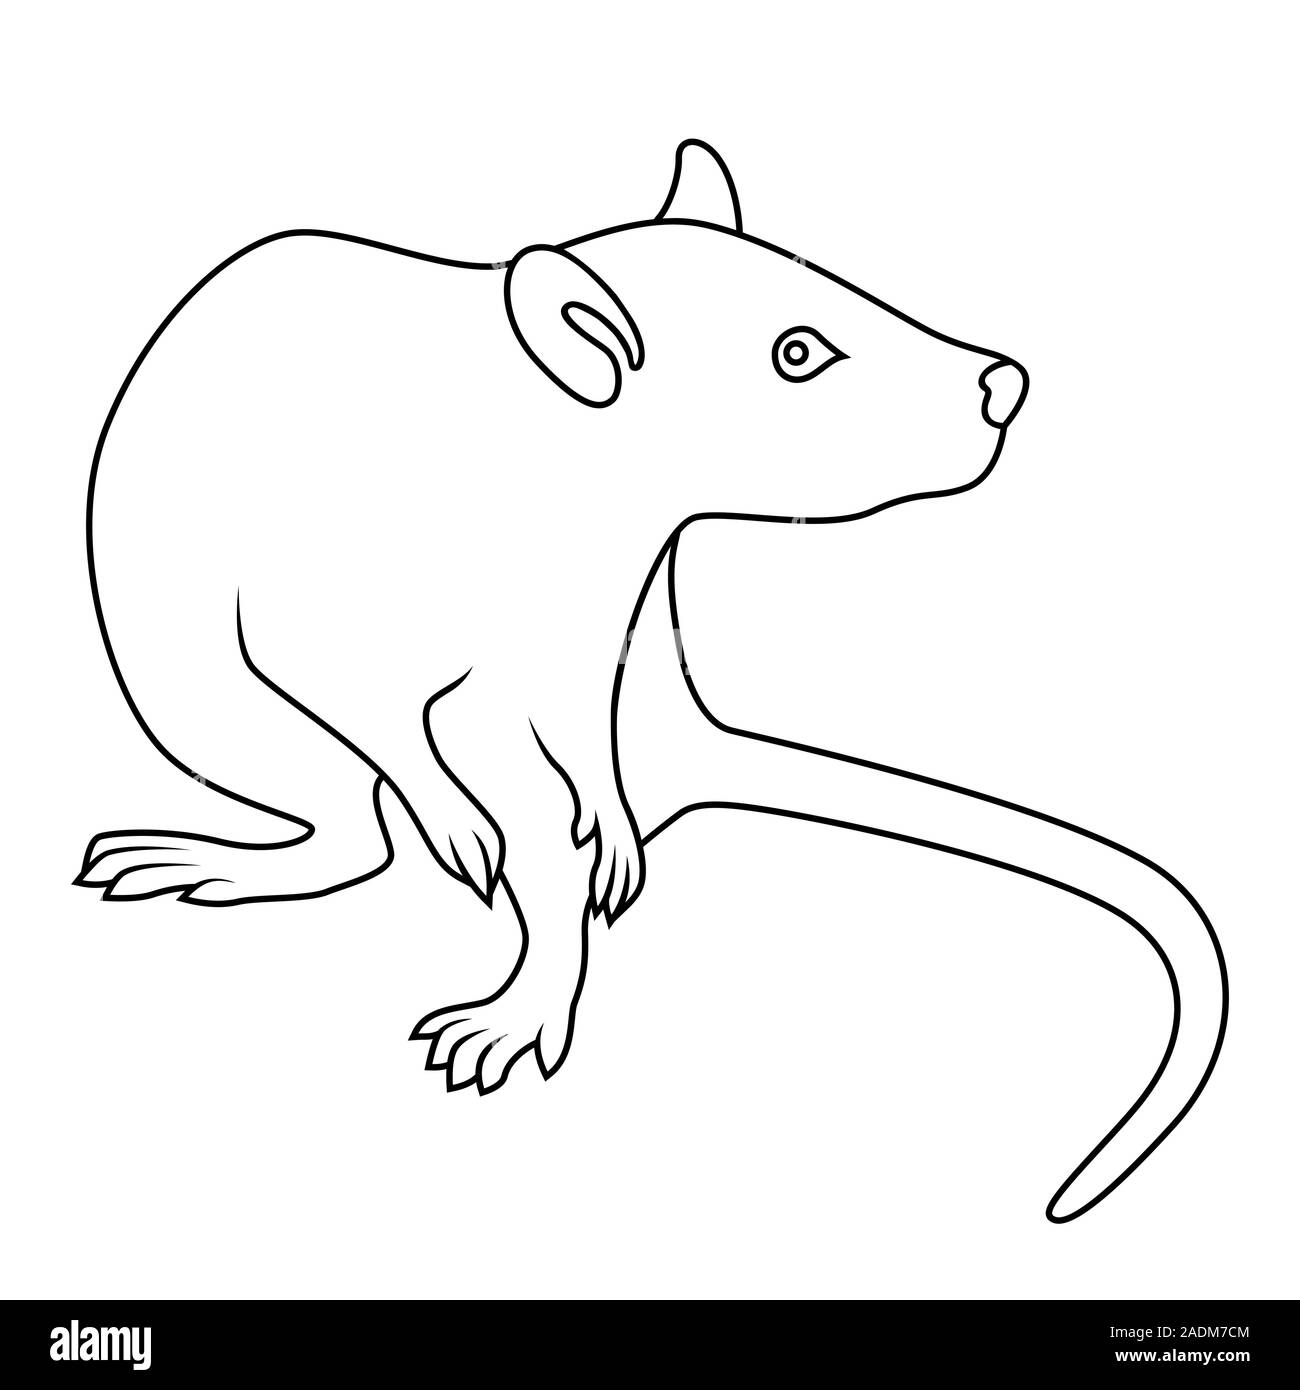 Contour noir de signe de zodiaque Rat, symbole de la nouvelle année sur le calendrier oriental, hand drawn illustration isolé sur fond blanc Illustration de Vecteur